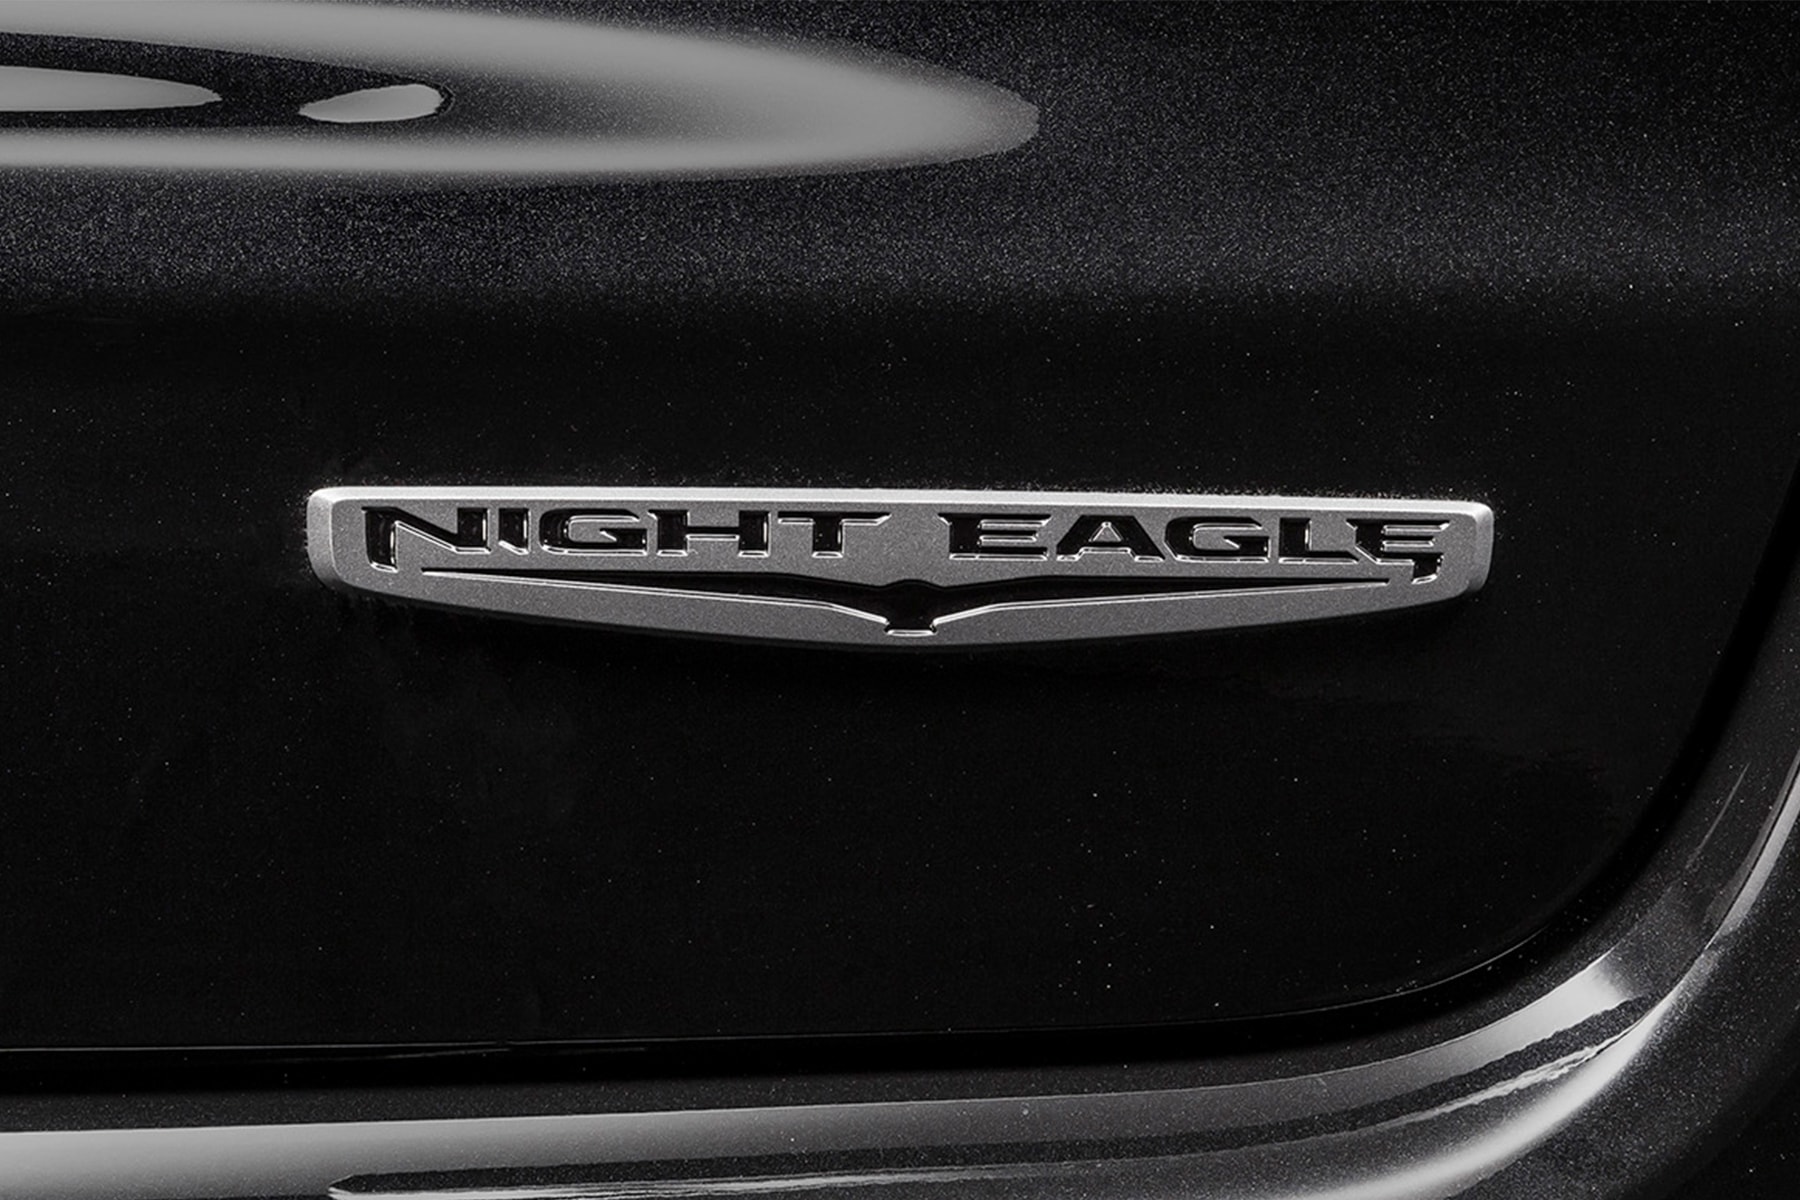 精悍な グレー ブラック カラー が輝く ジープ・コンパス 限定車、ナイトイーグル が登場 jeep commpass night eagle HYPEBEAST ハイプビースト